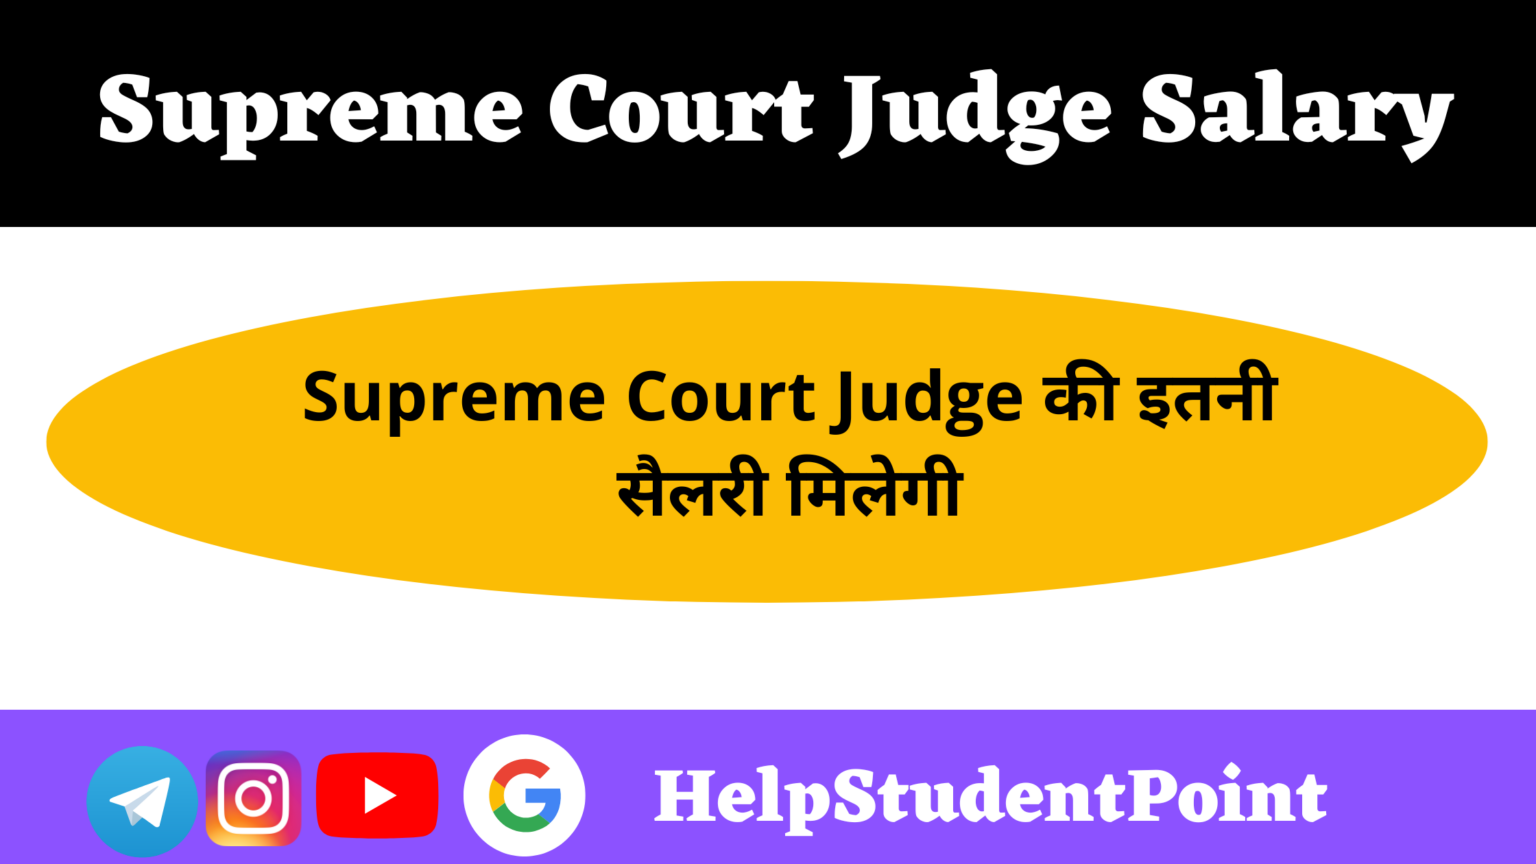 Supreme Court Judge Salary HelpStudentPoint